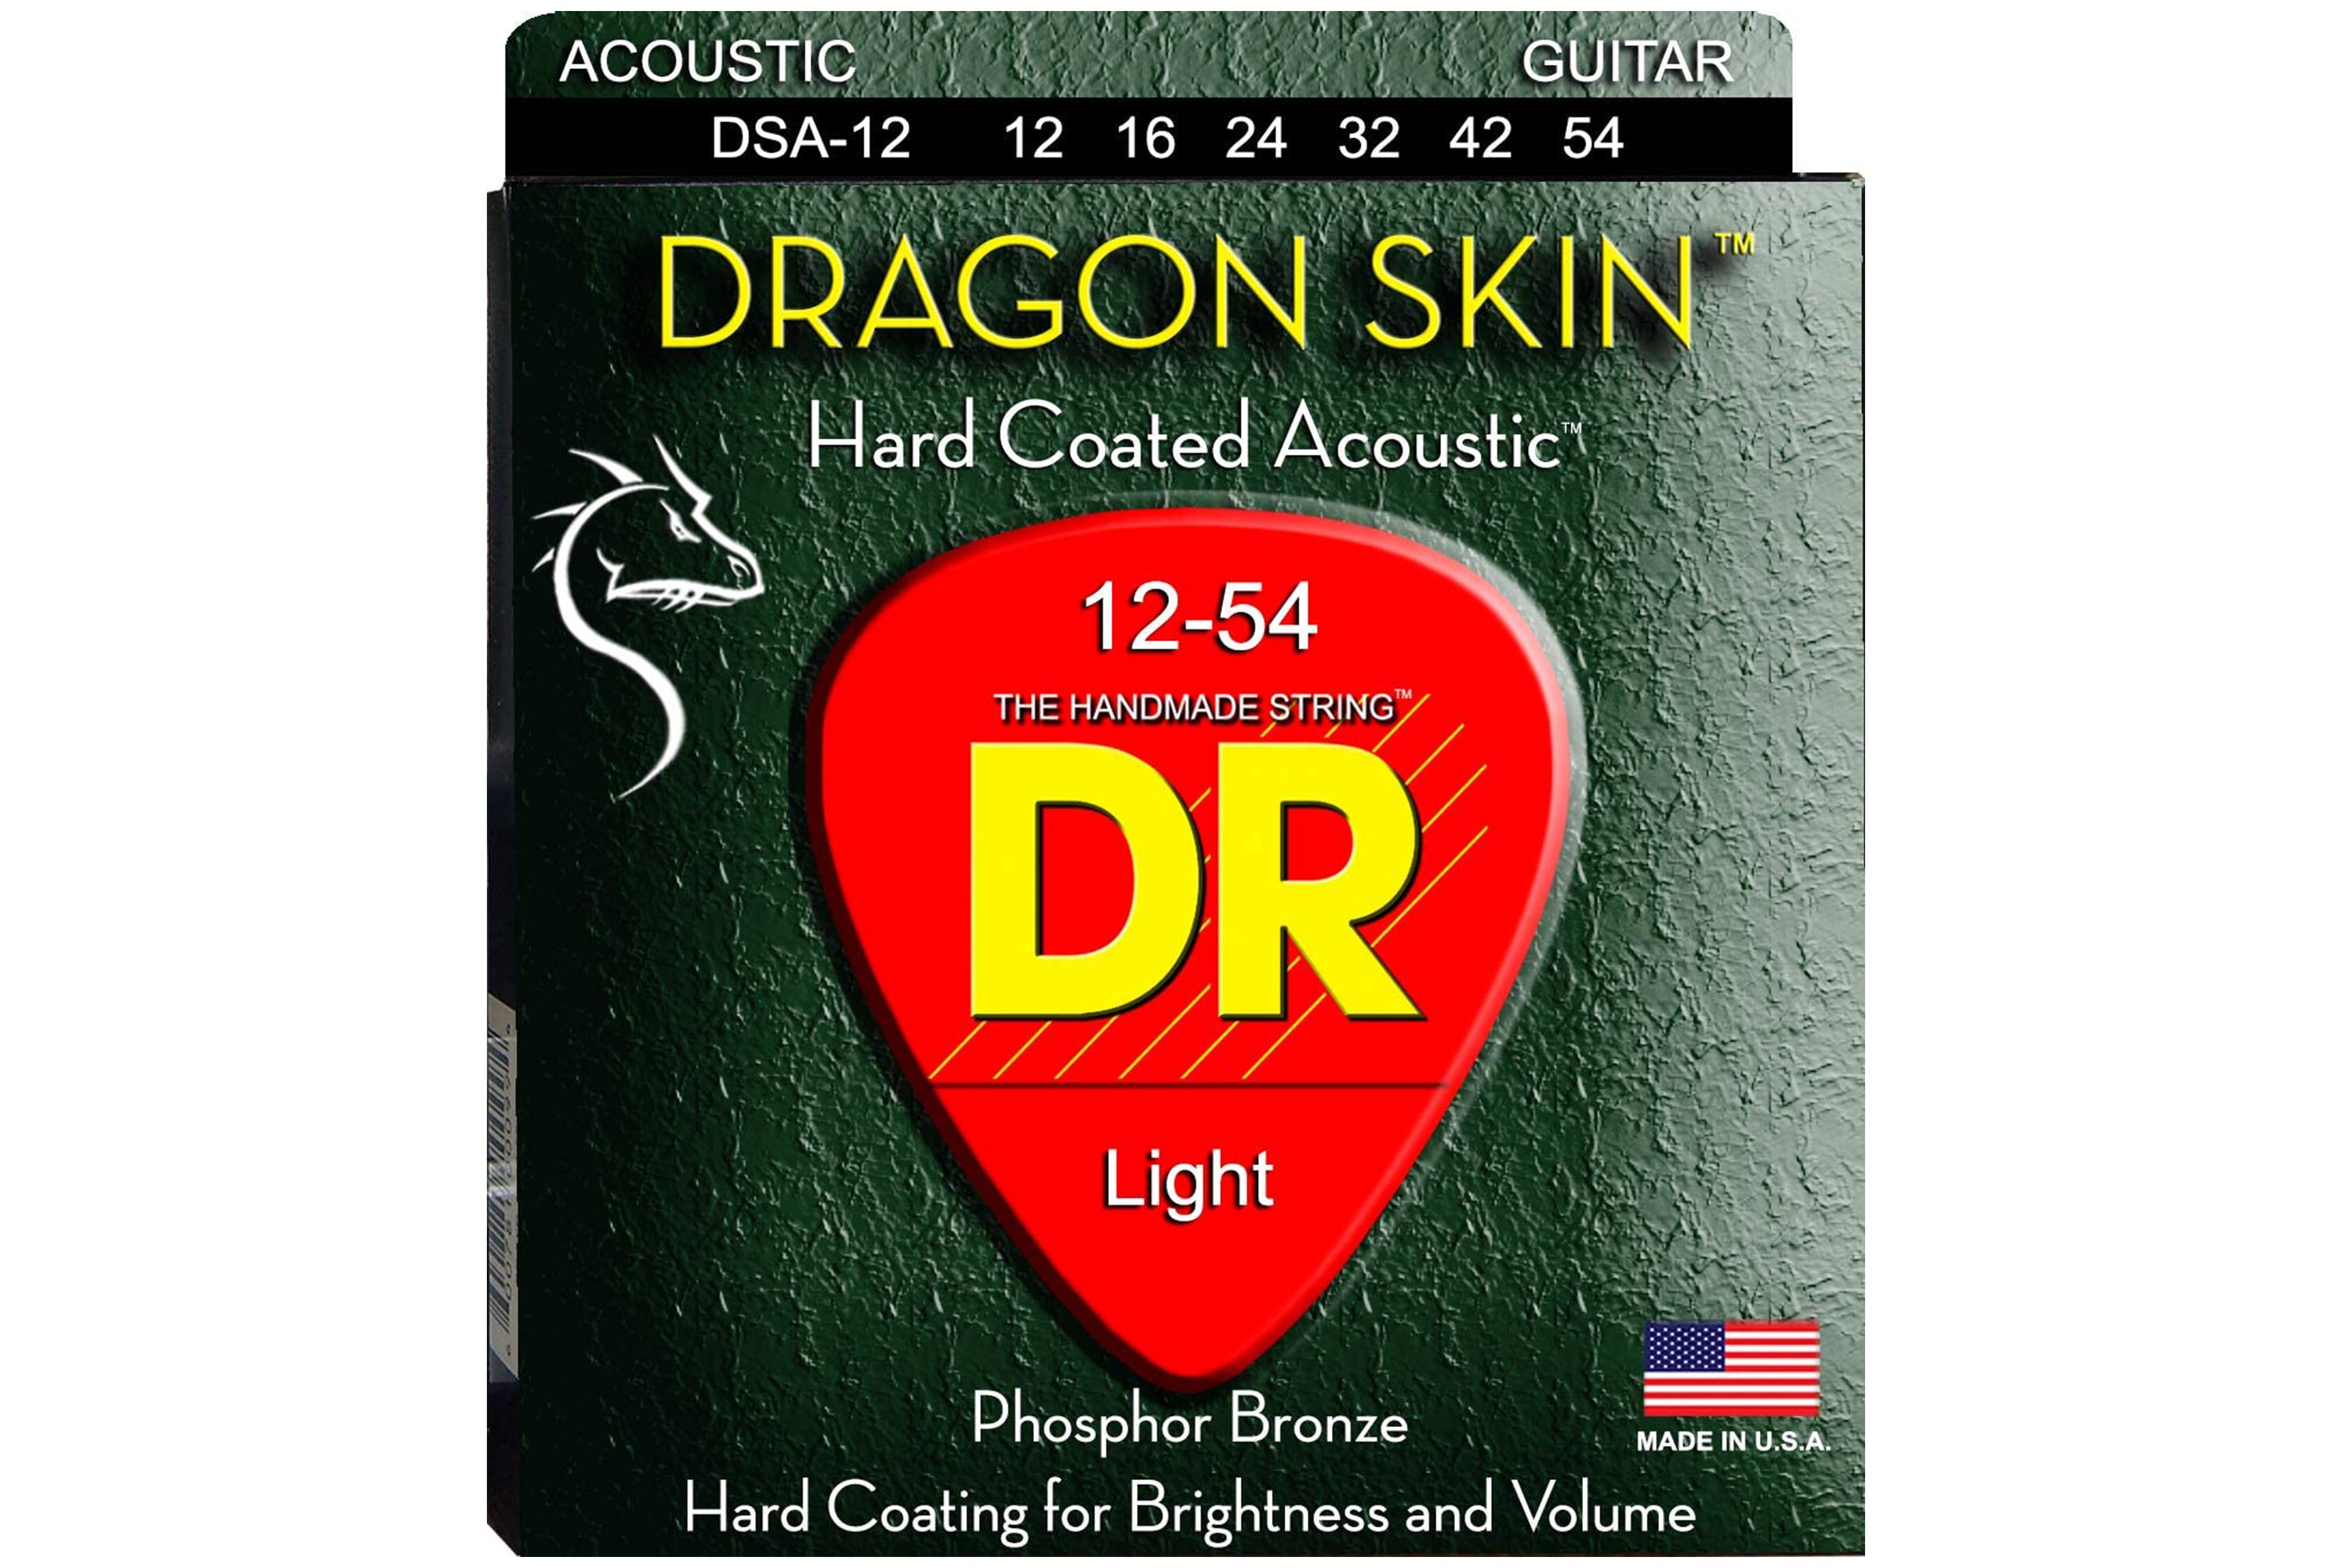 DR Strings Dragon Skin Acoustic 12-54 Light Guitar Strings